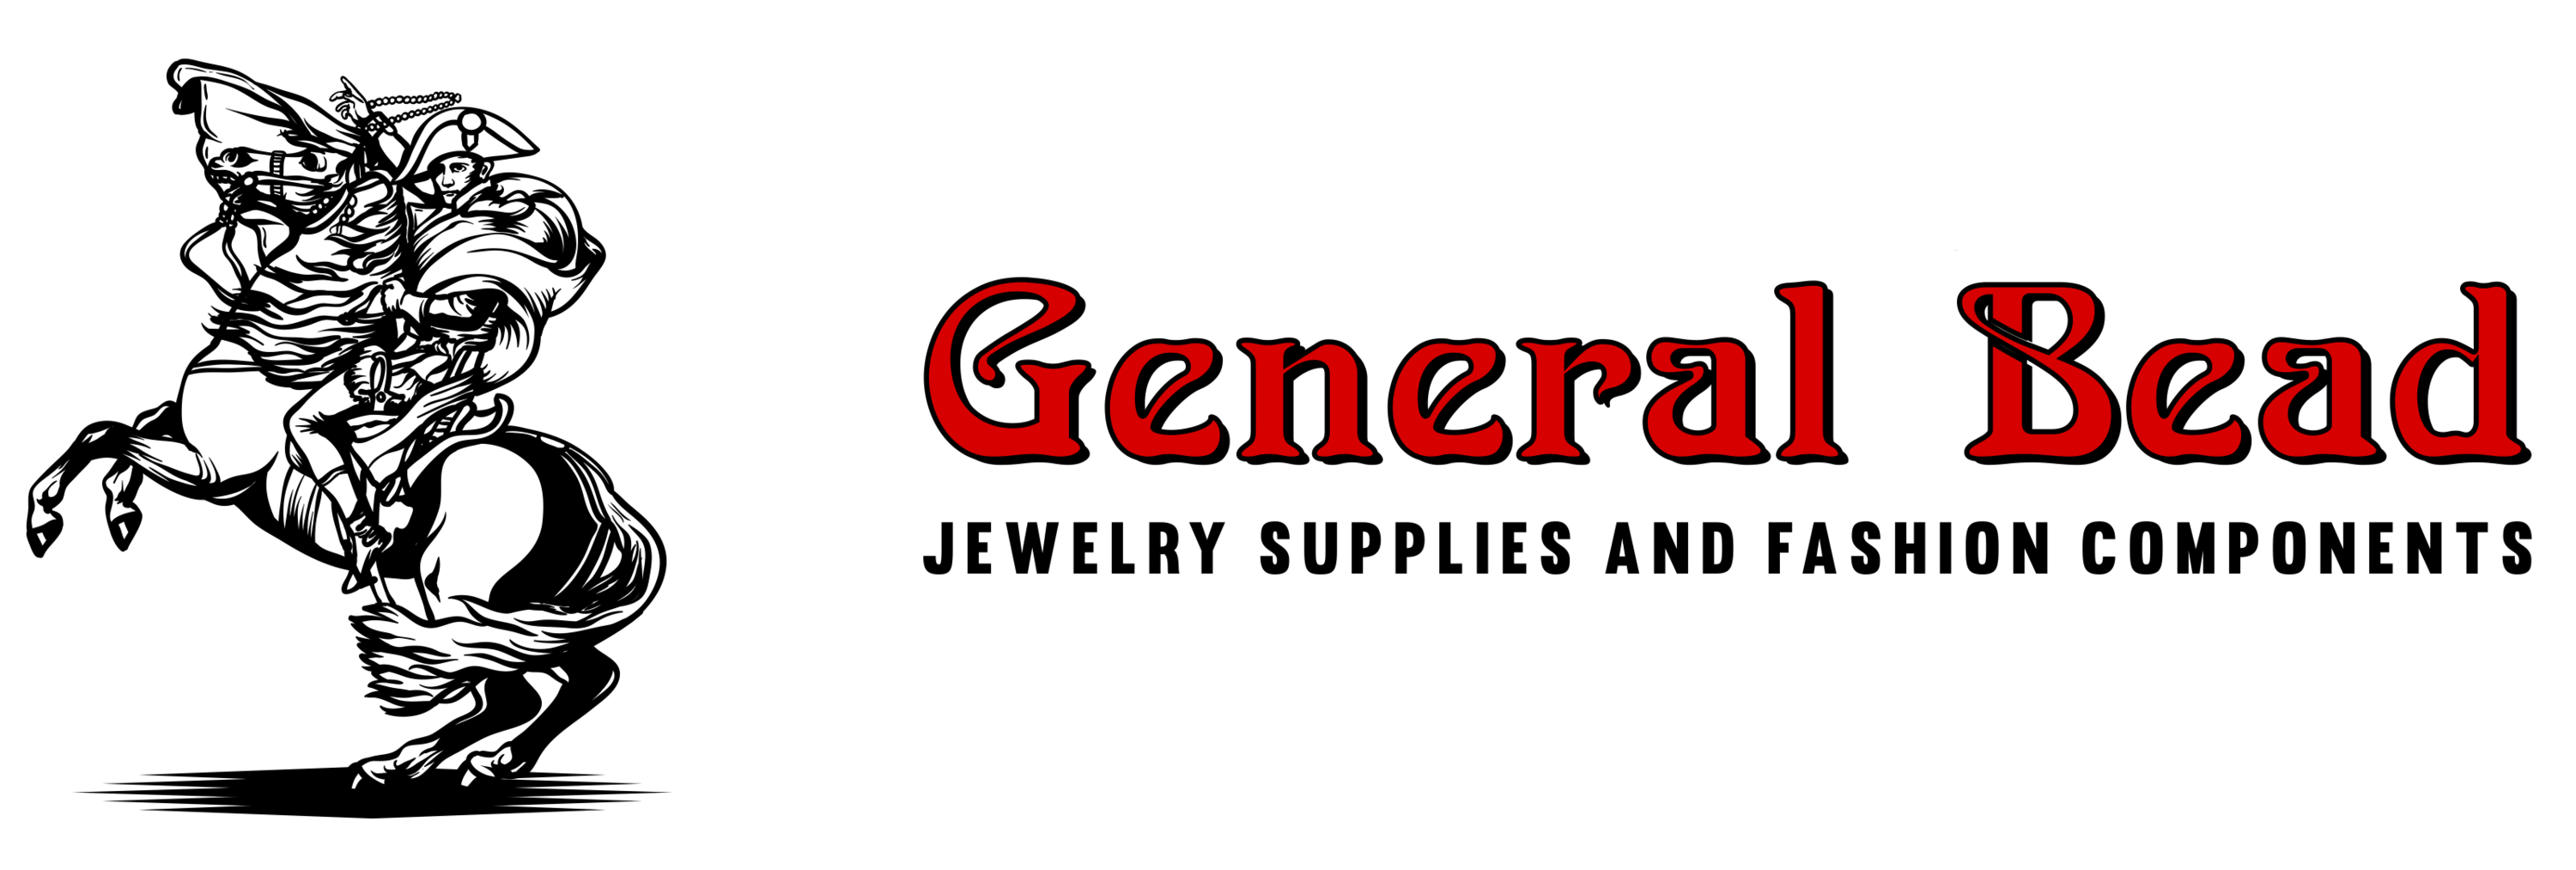 Company logo of General Bead